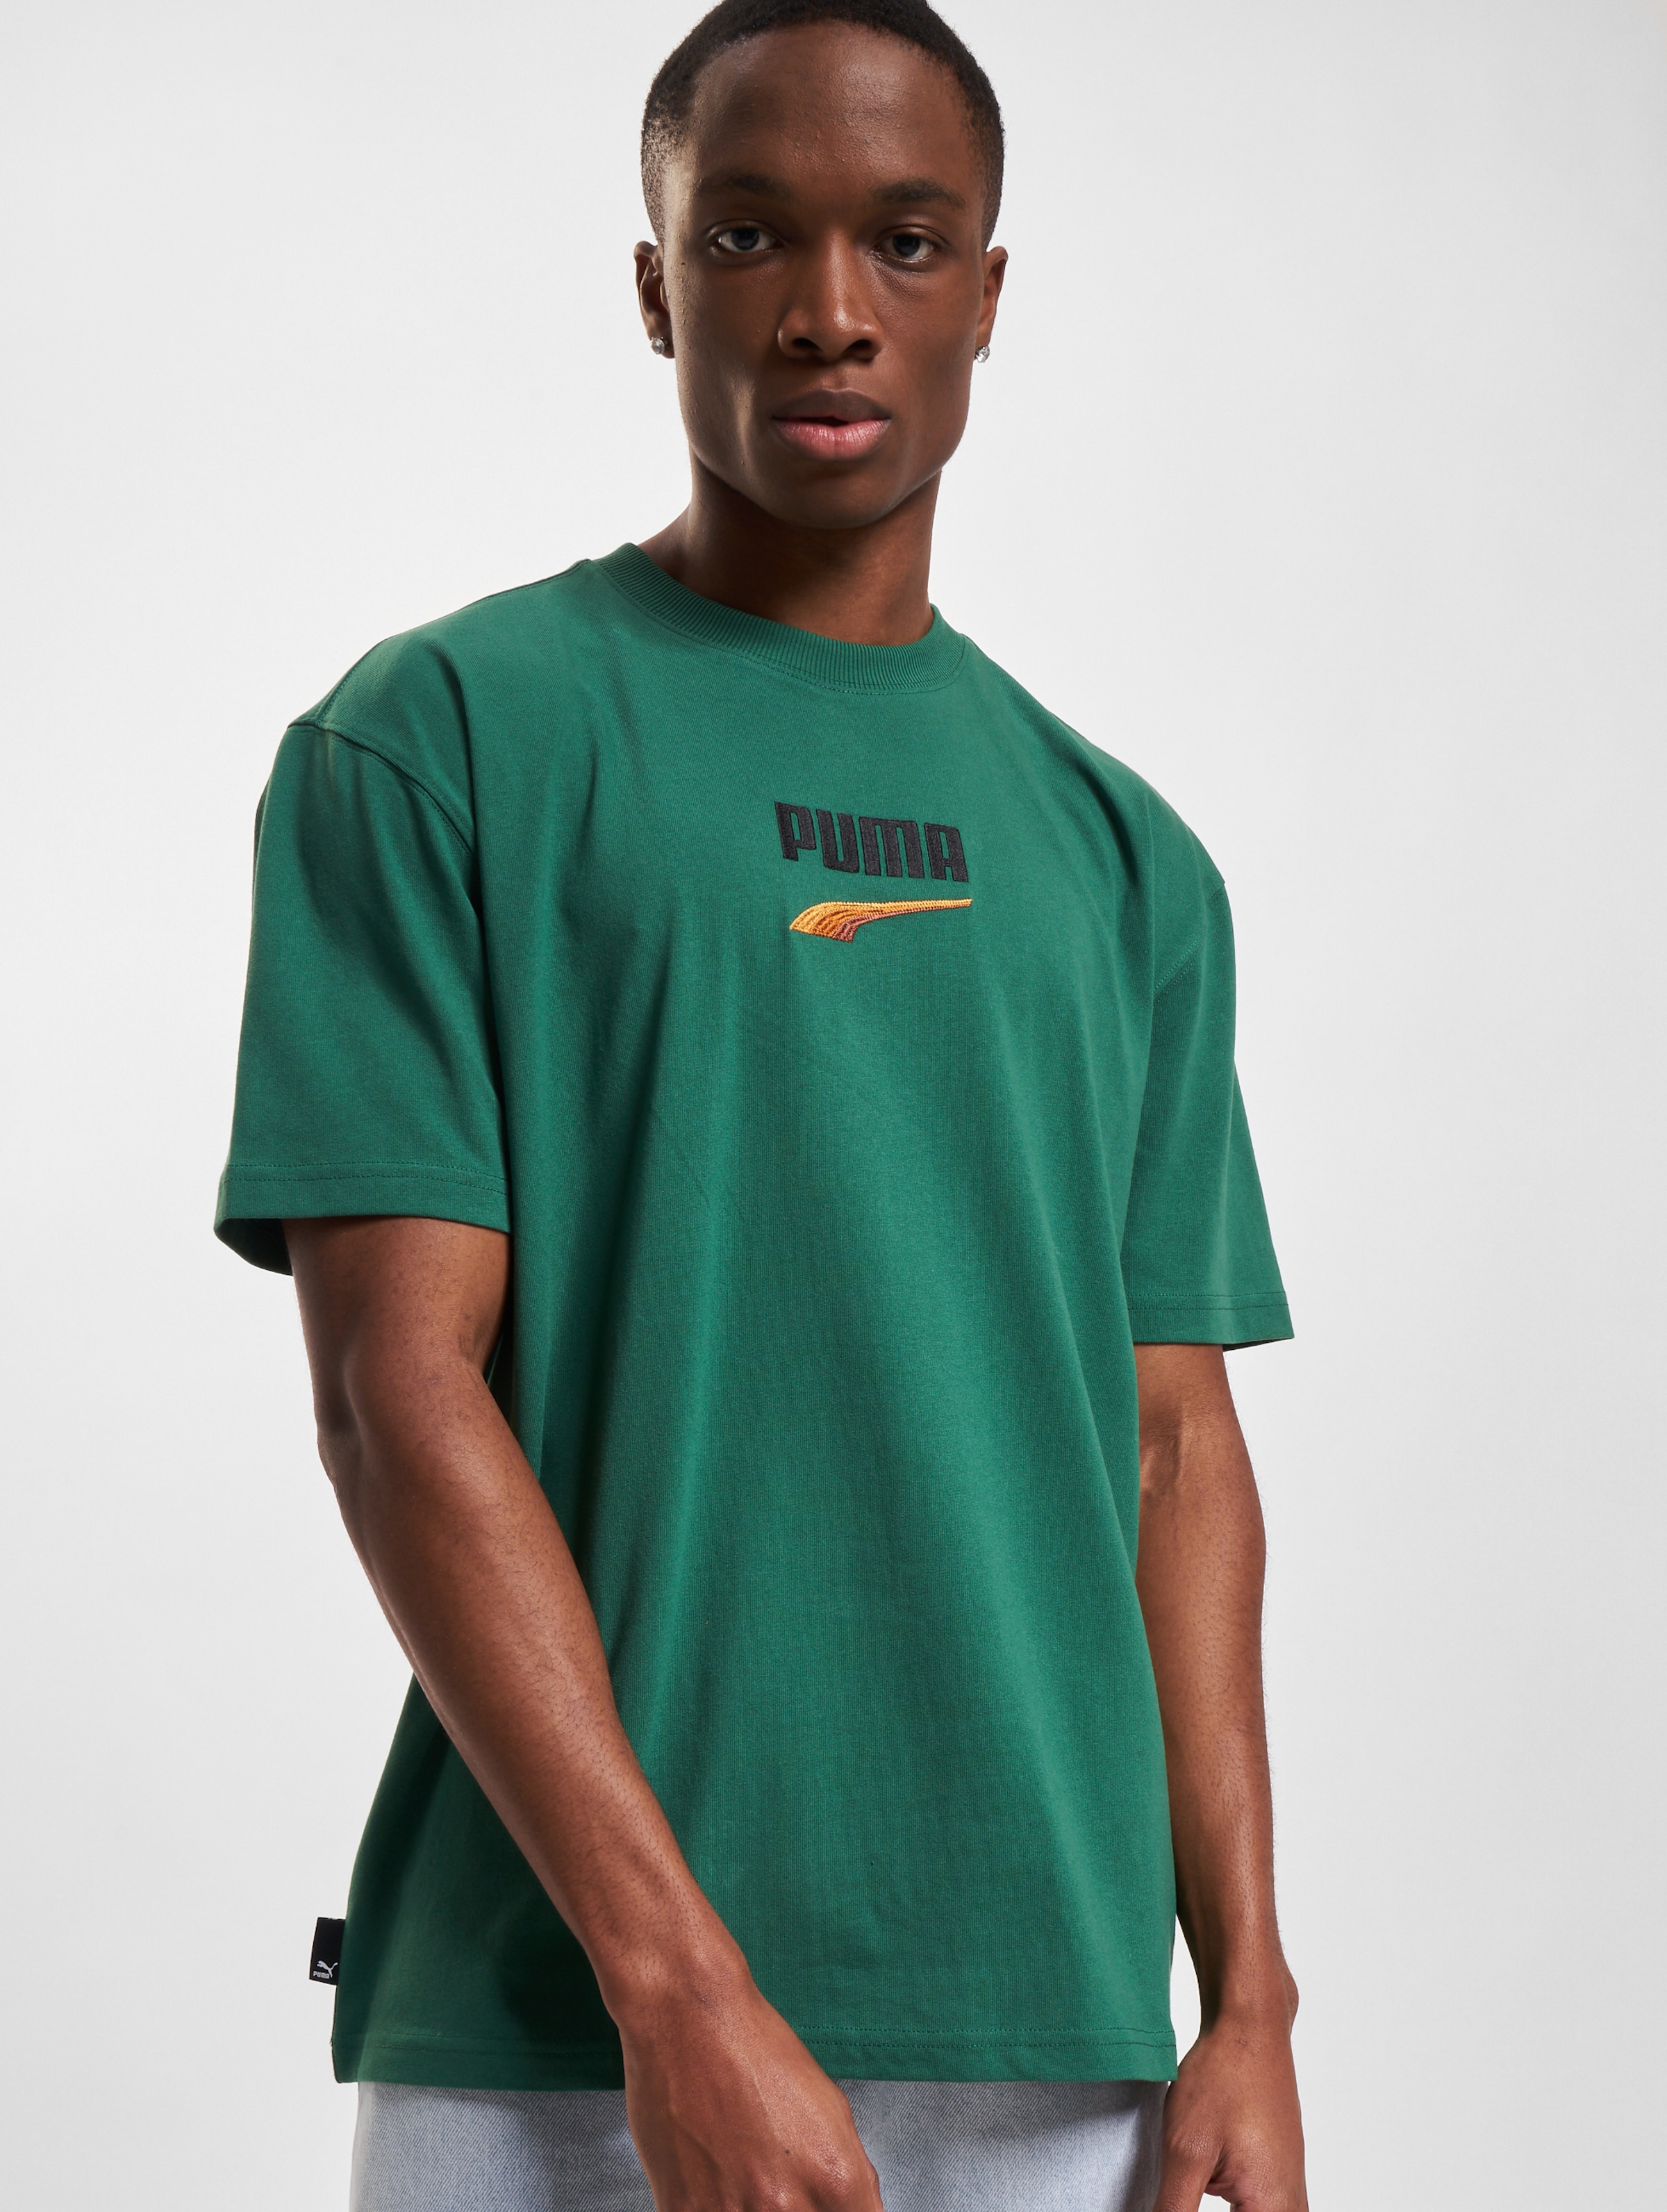 Puma T-Shirt Mannen op kleur groen, Maat S